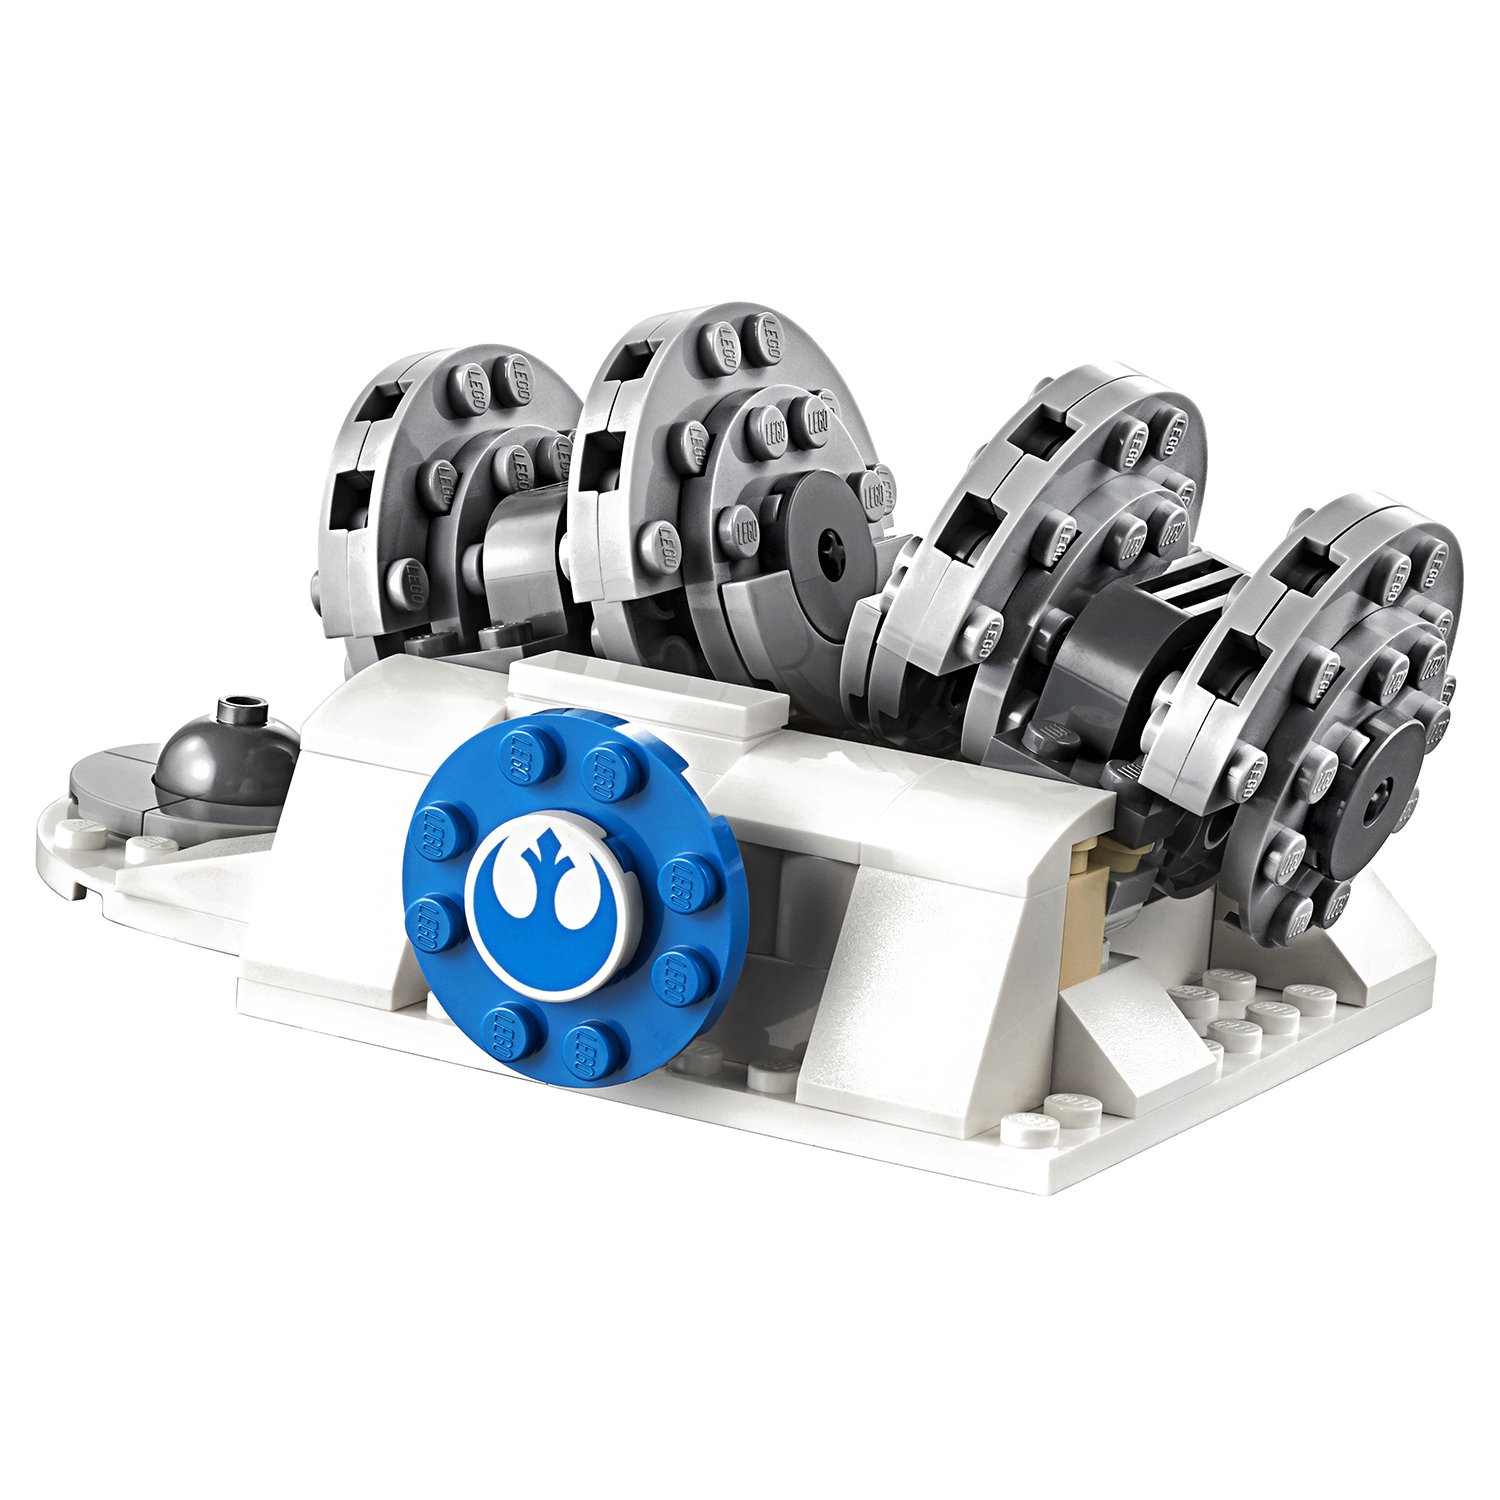 Конструктор LEGO Star Wars 75239 Разрушение генераторов на Хоте